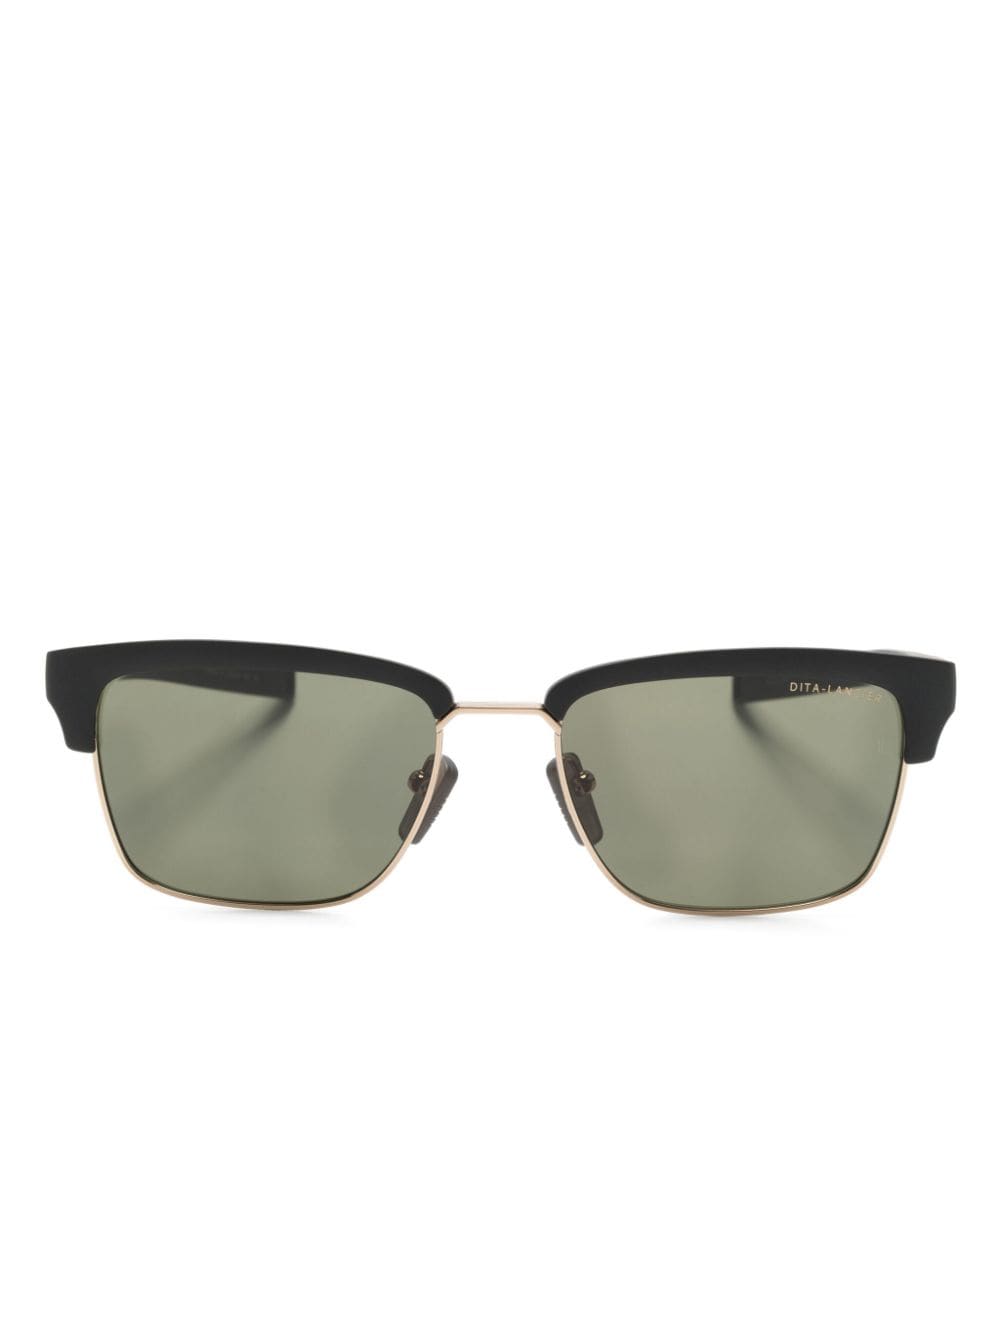 Dita Eyewear DLS-416 rectangle-frame sunglasses - Black von Dita Eyewear